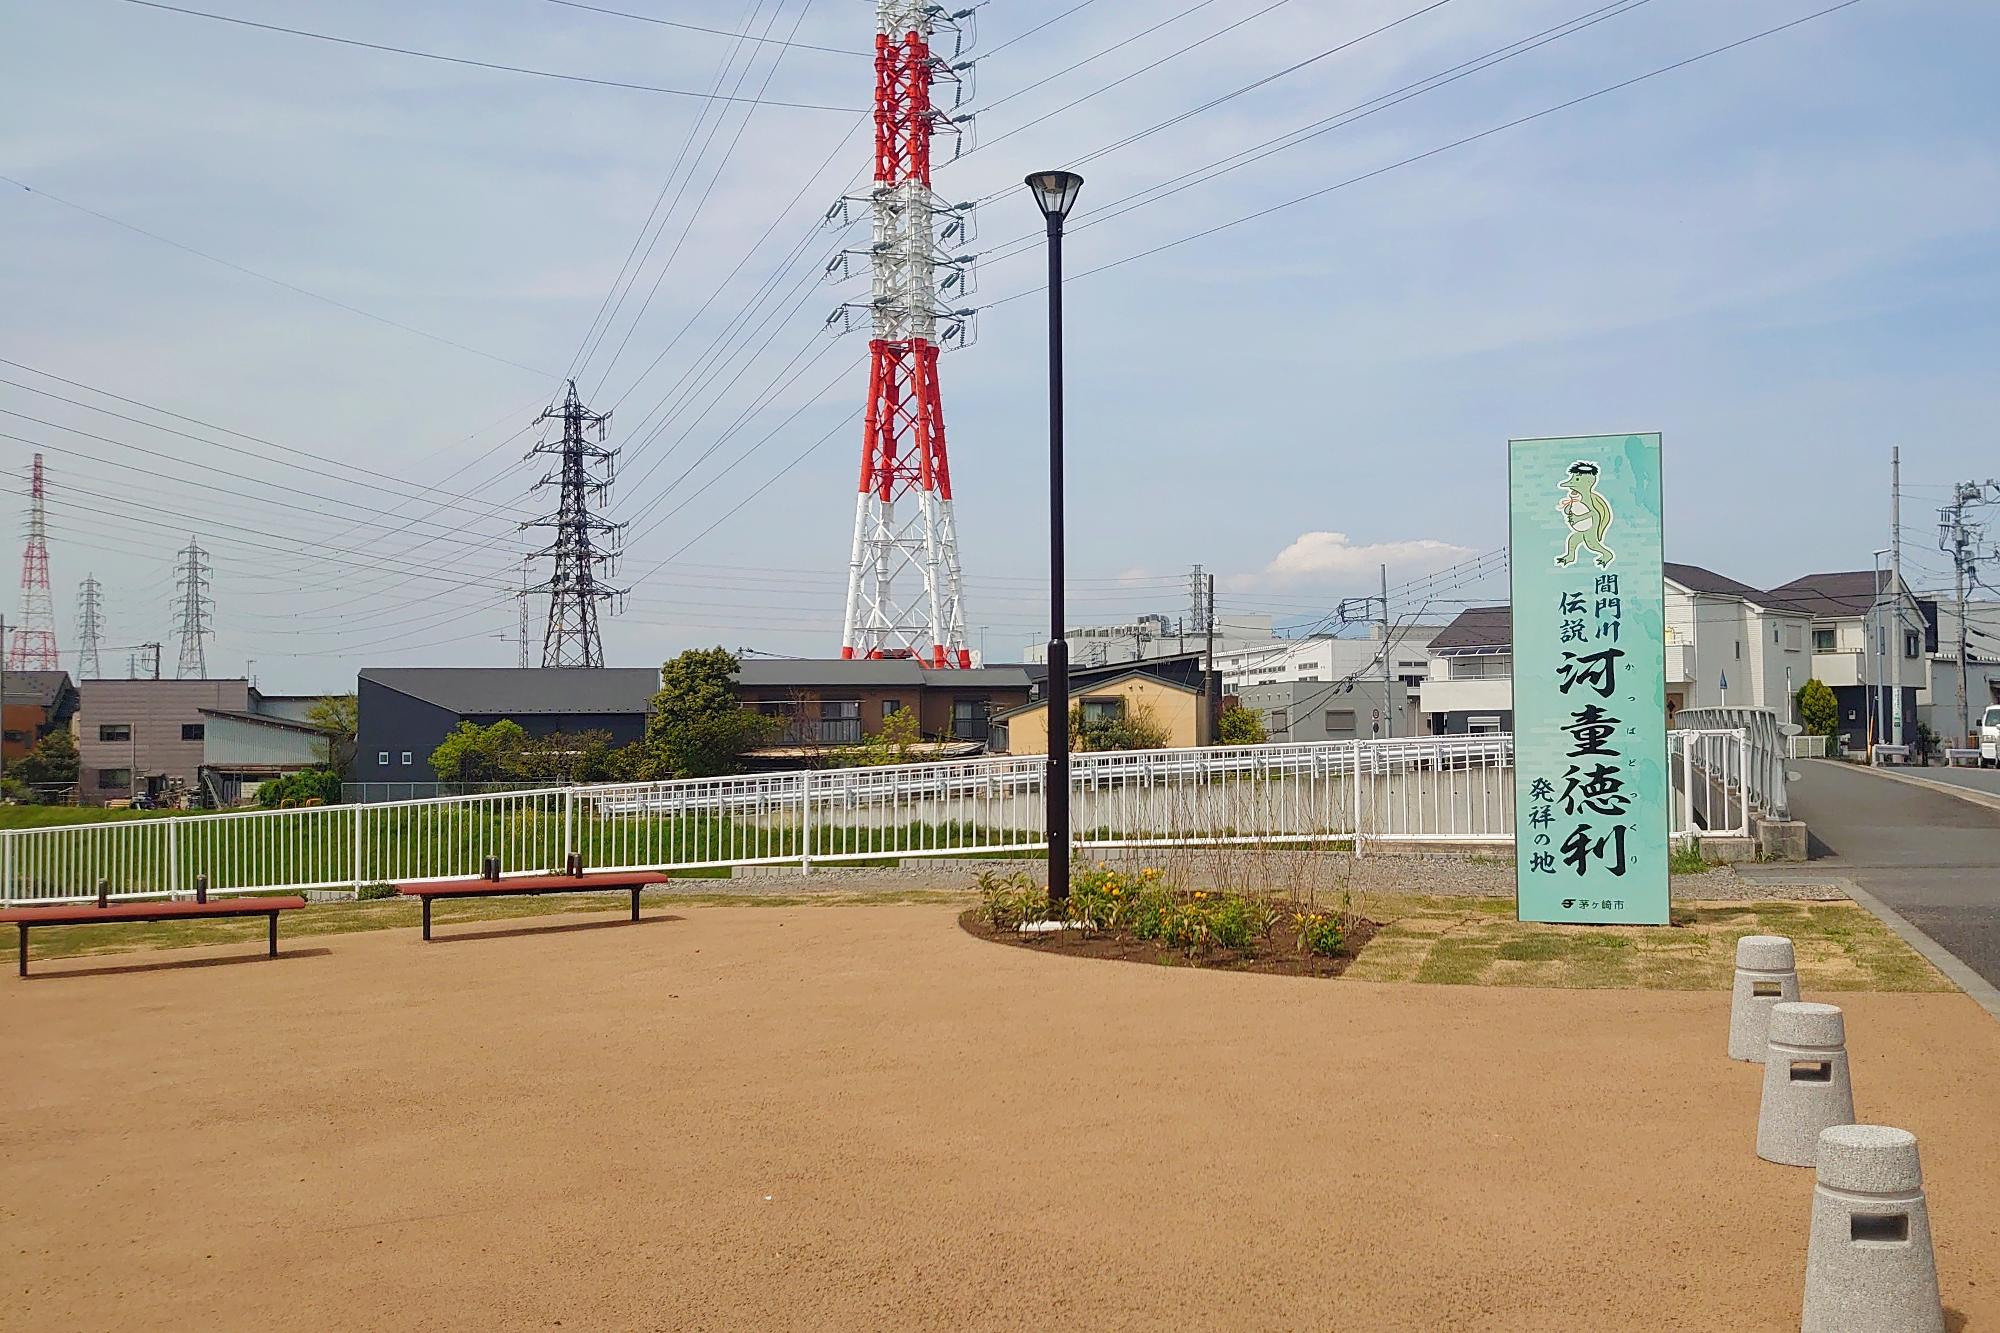 撮影地点は茅ヶ崎市で看板がある辺りは寒川町です。